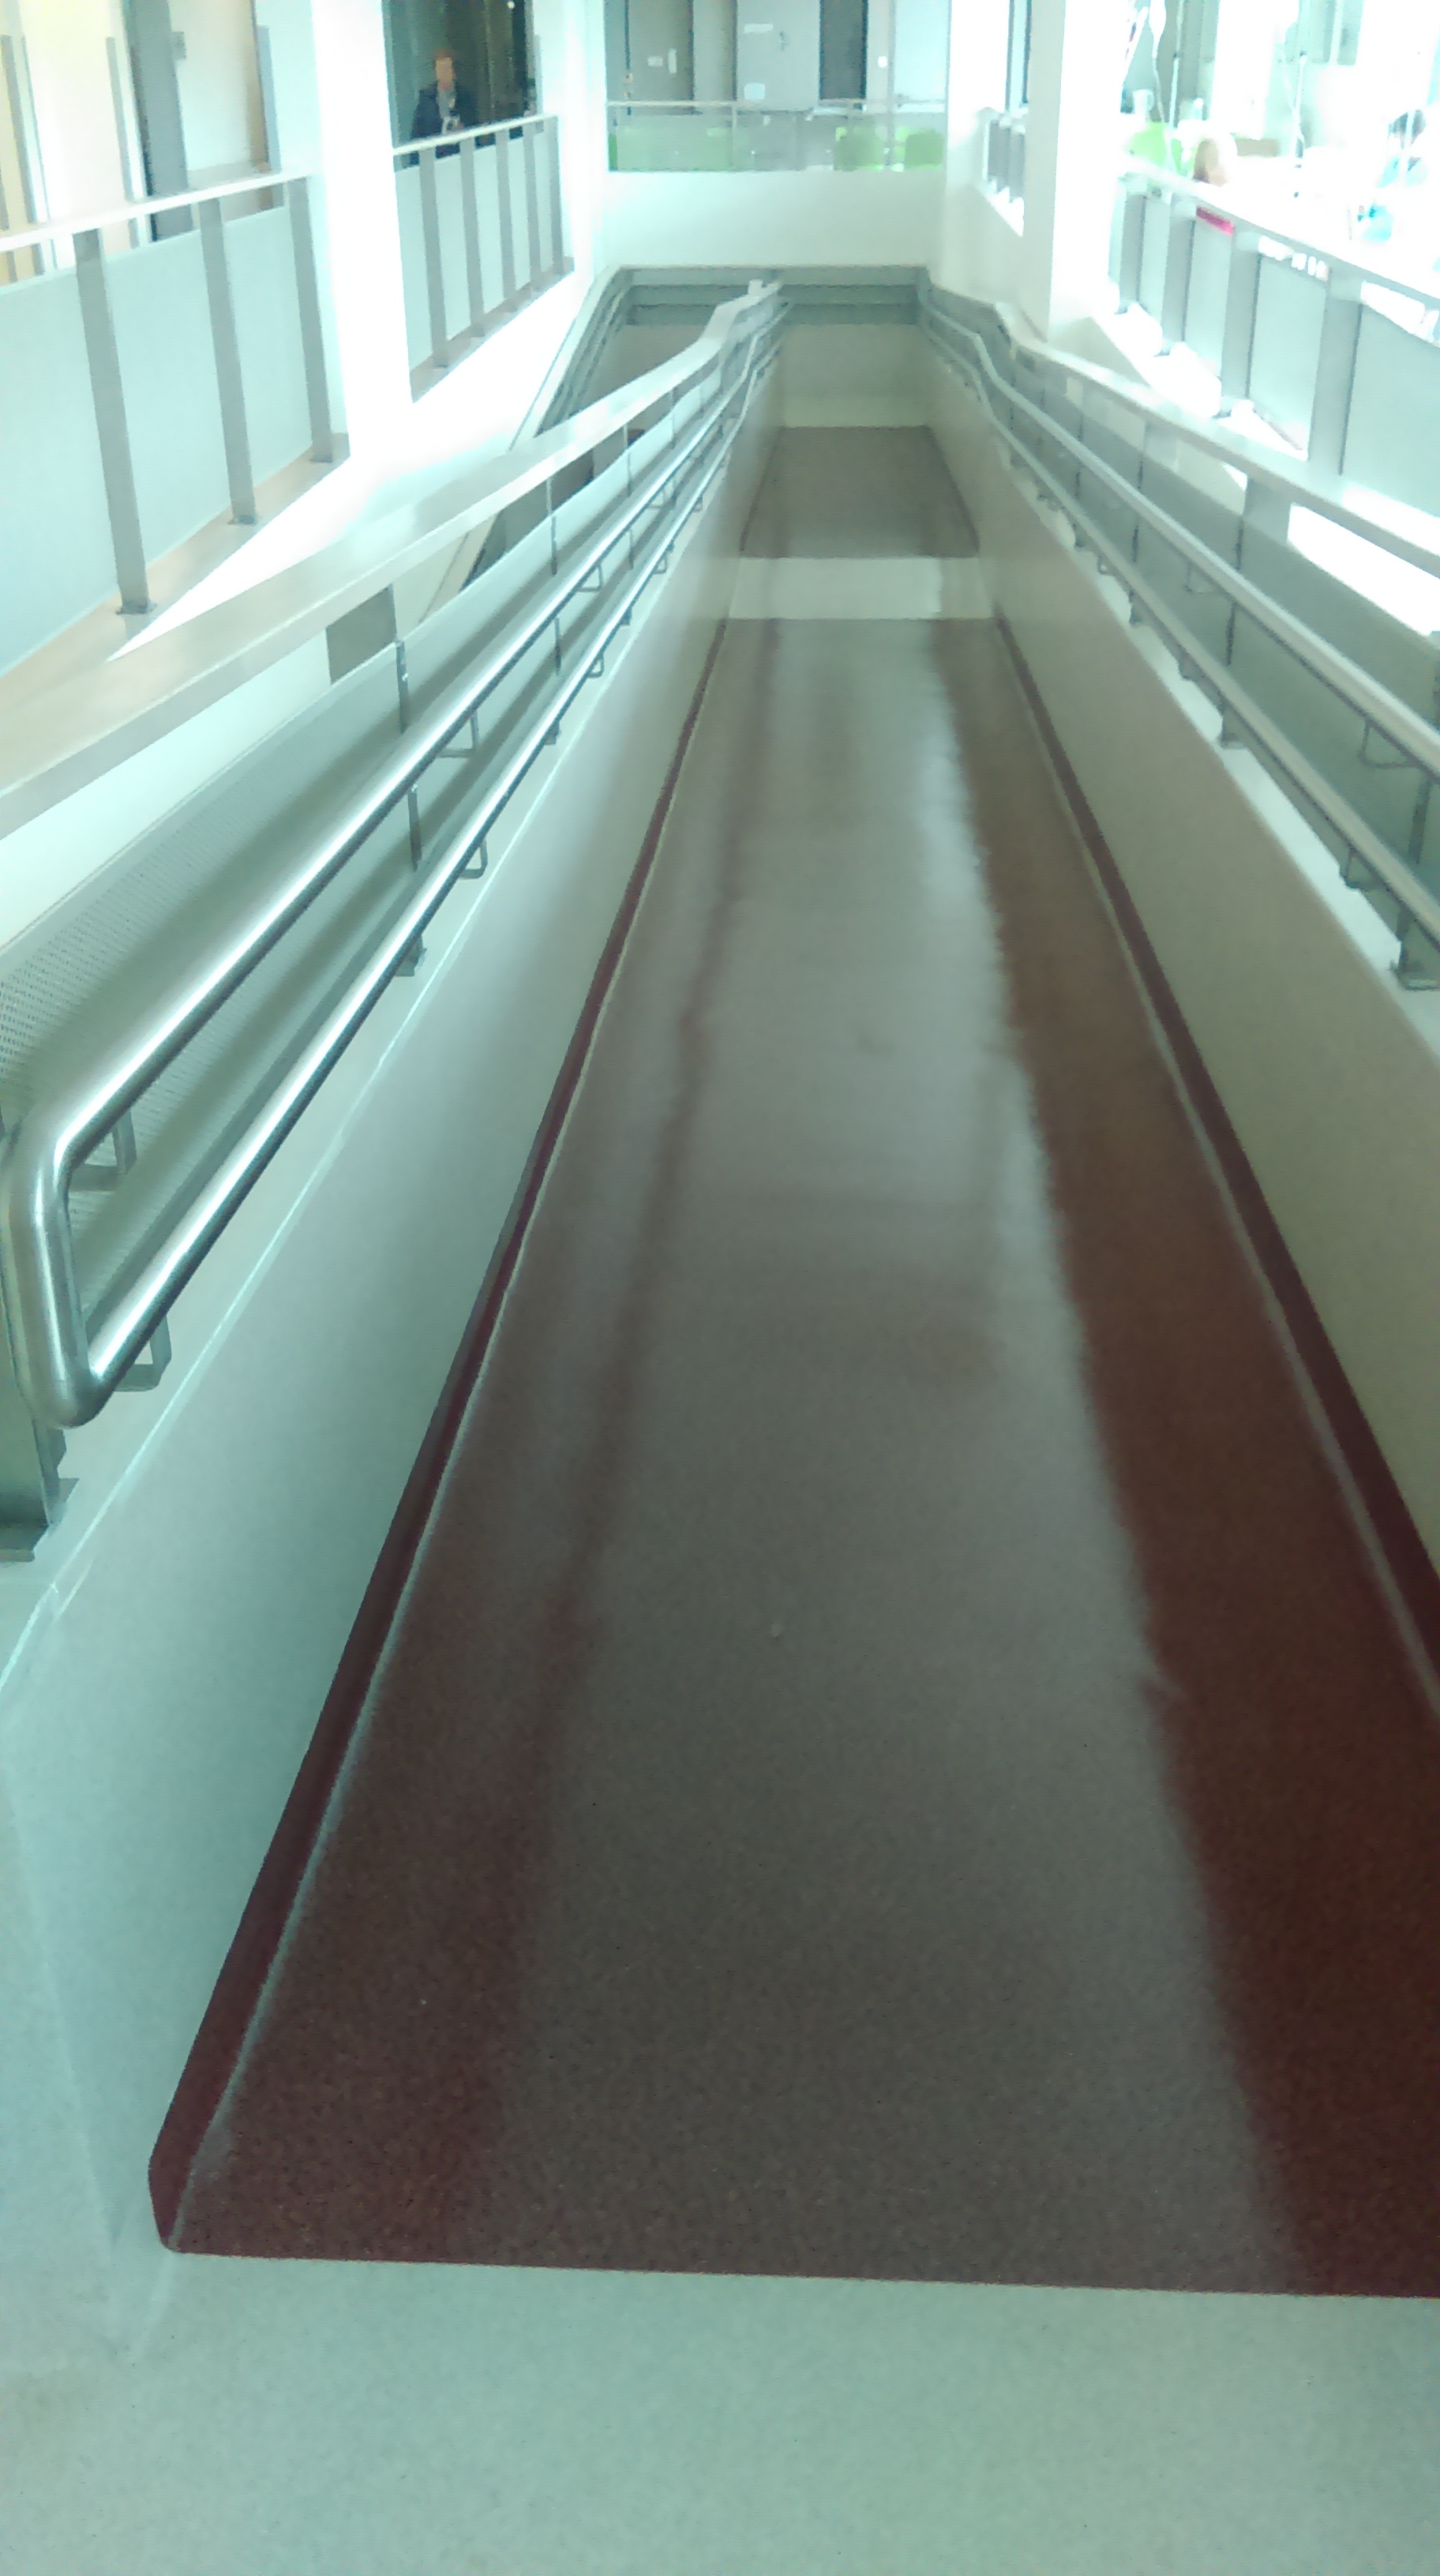 w budynku szpitala oprócz wind dostępnych dla osób niepełnsprawnych znajduje się również rampa - długość 67 metrów - łączy piętro 2 z 3